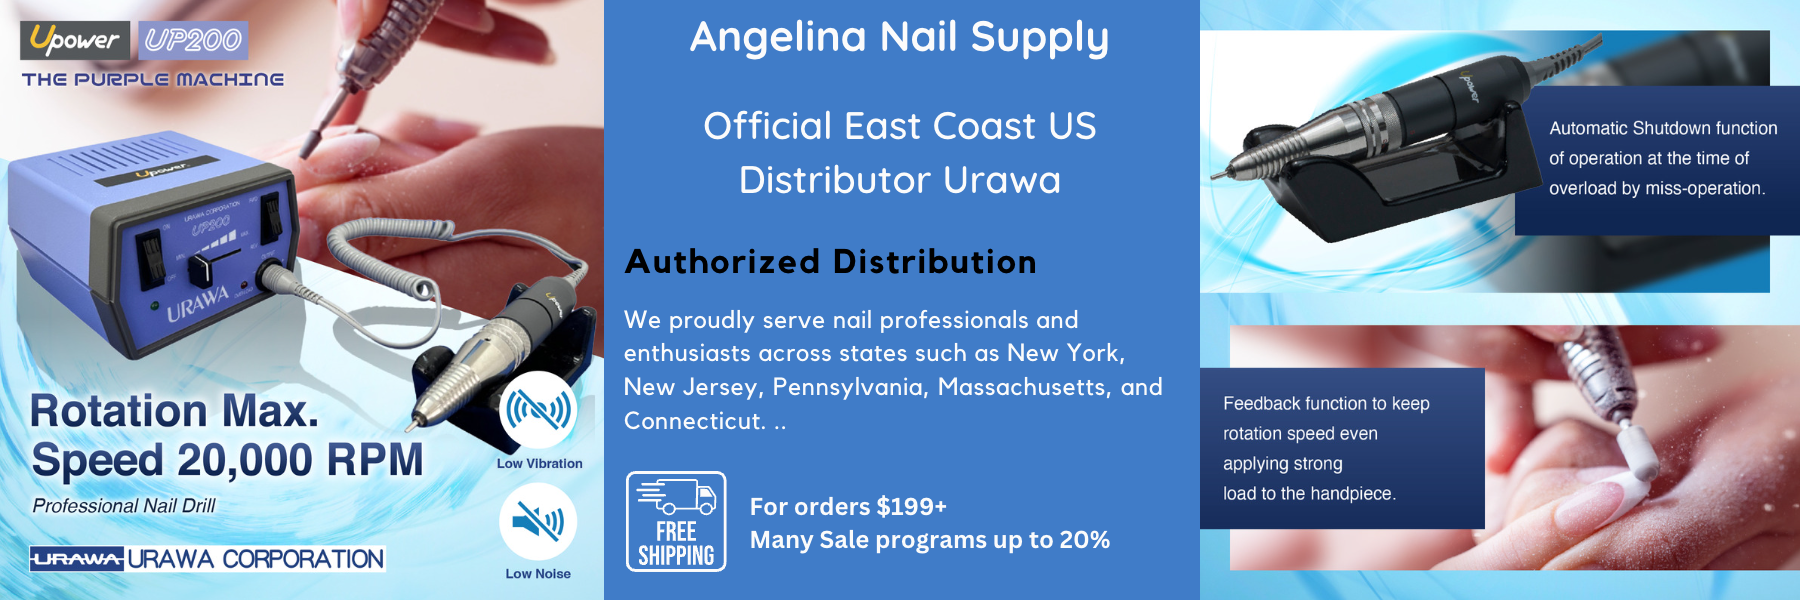 uarawa_up_200_header - Angelina Nail Supply NYC